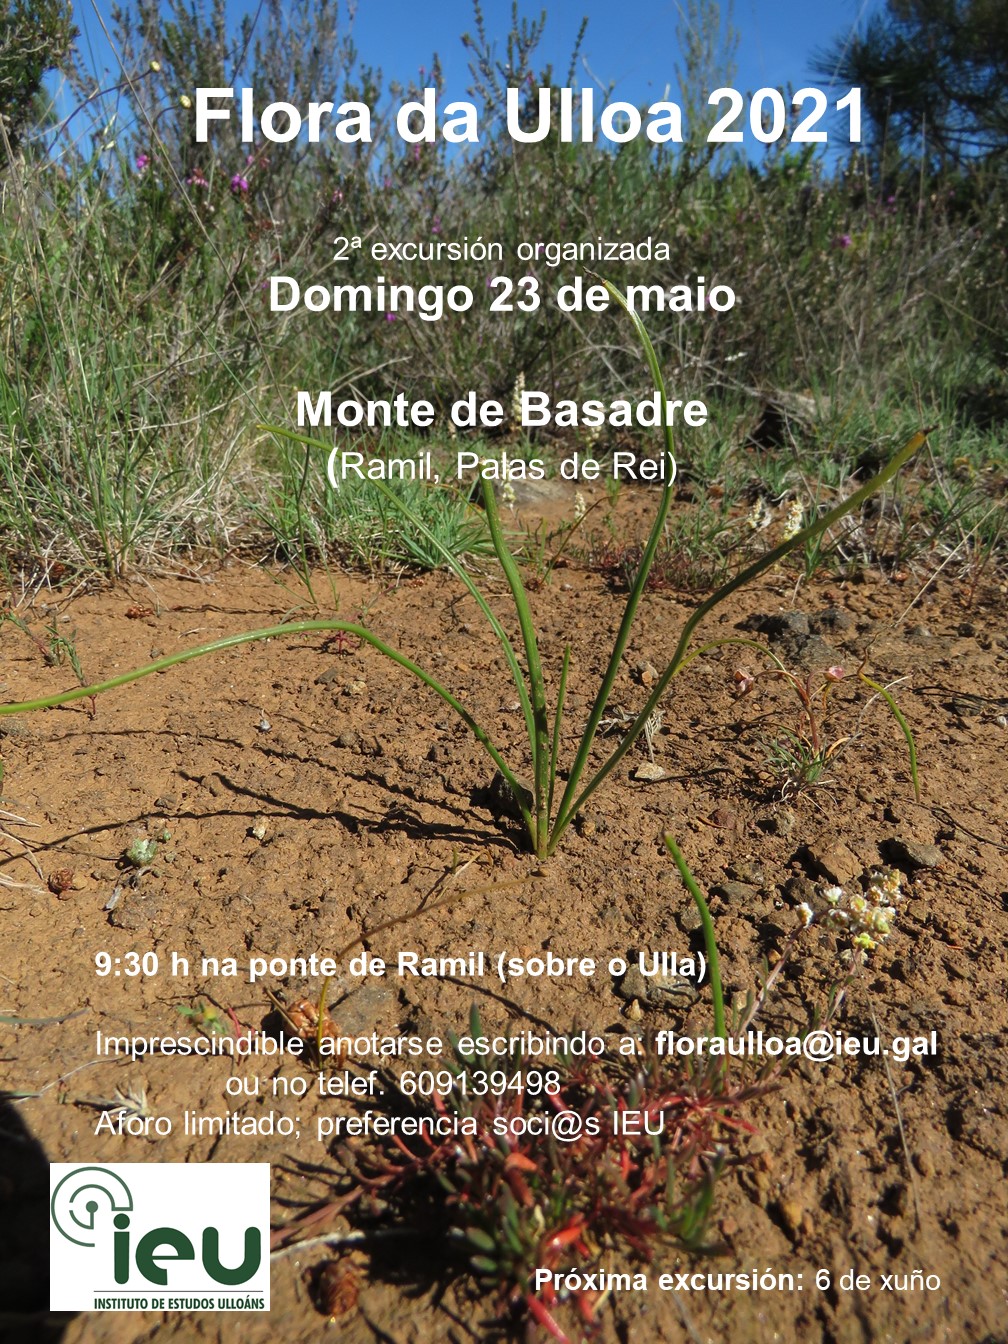 Excursión Flora da Ulloa 2-21, Monte Basadre, Instituto de Estudos Ulloáns